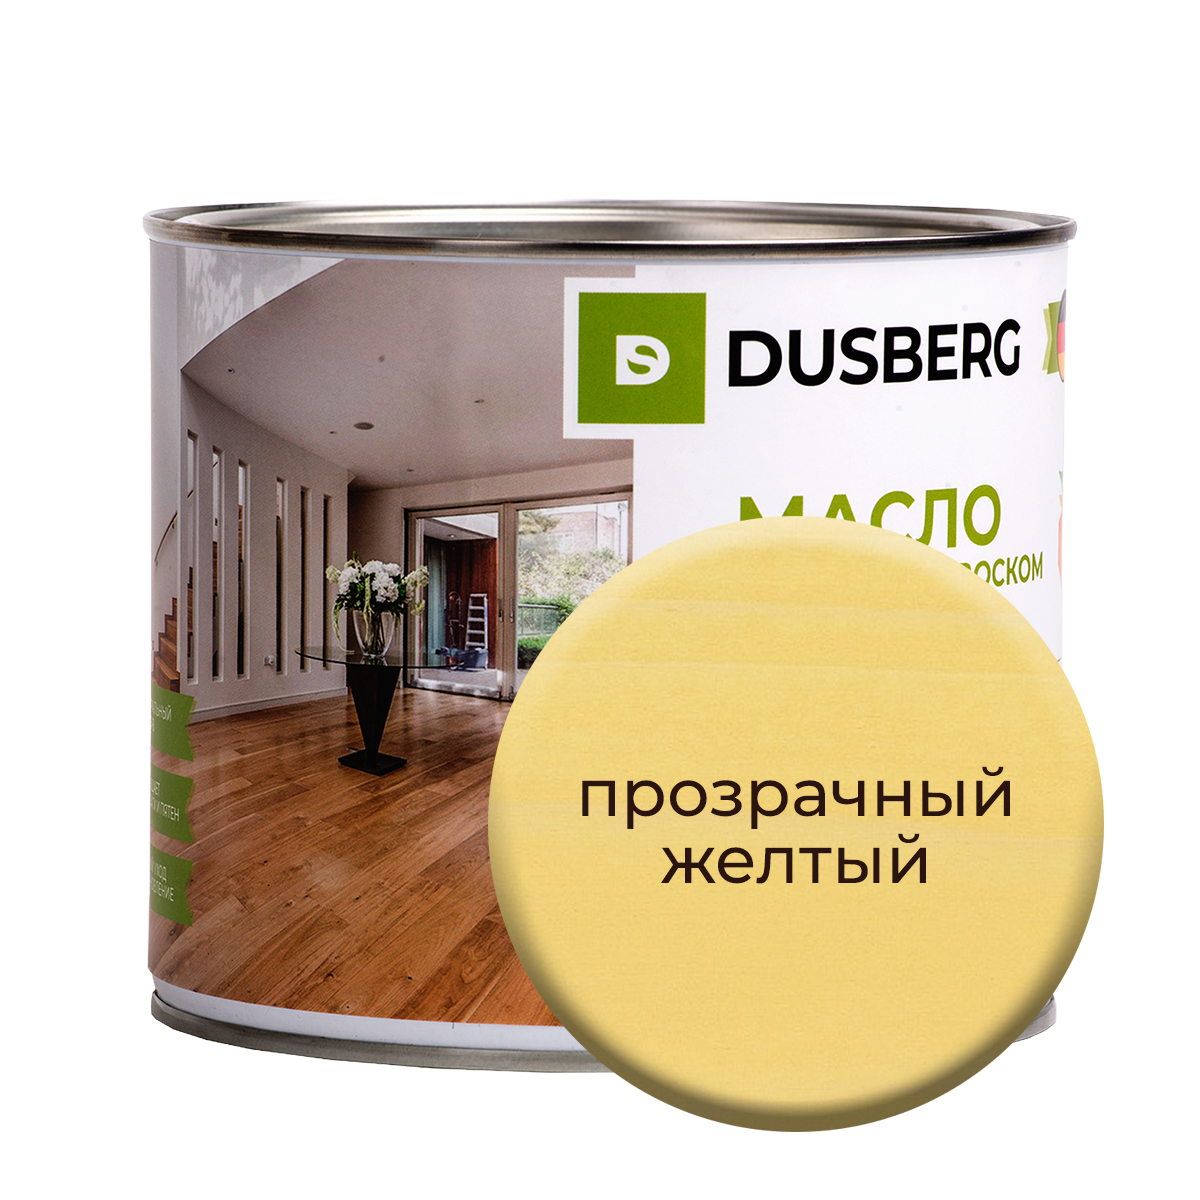 Масло Dusberg с твердым воском на бесцветной основе, 2 л Прозрачный желтый масло dusberg с твердым воском на бес ной основе 2 л